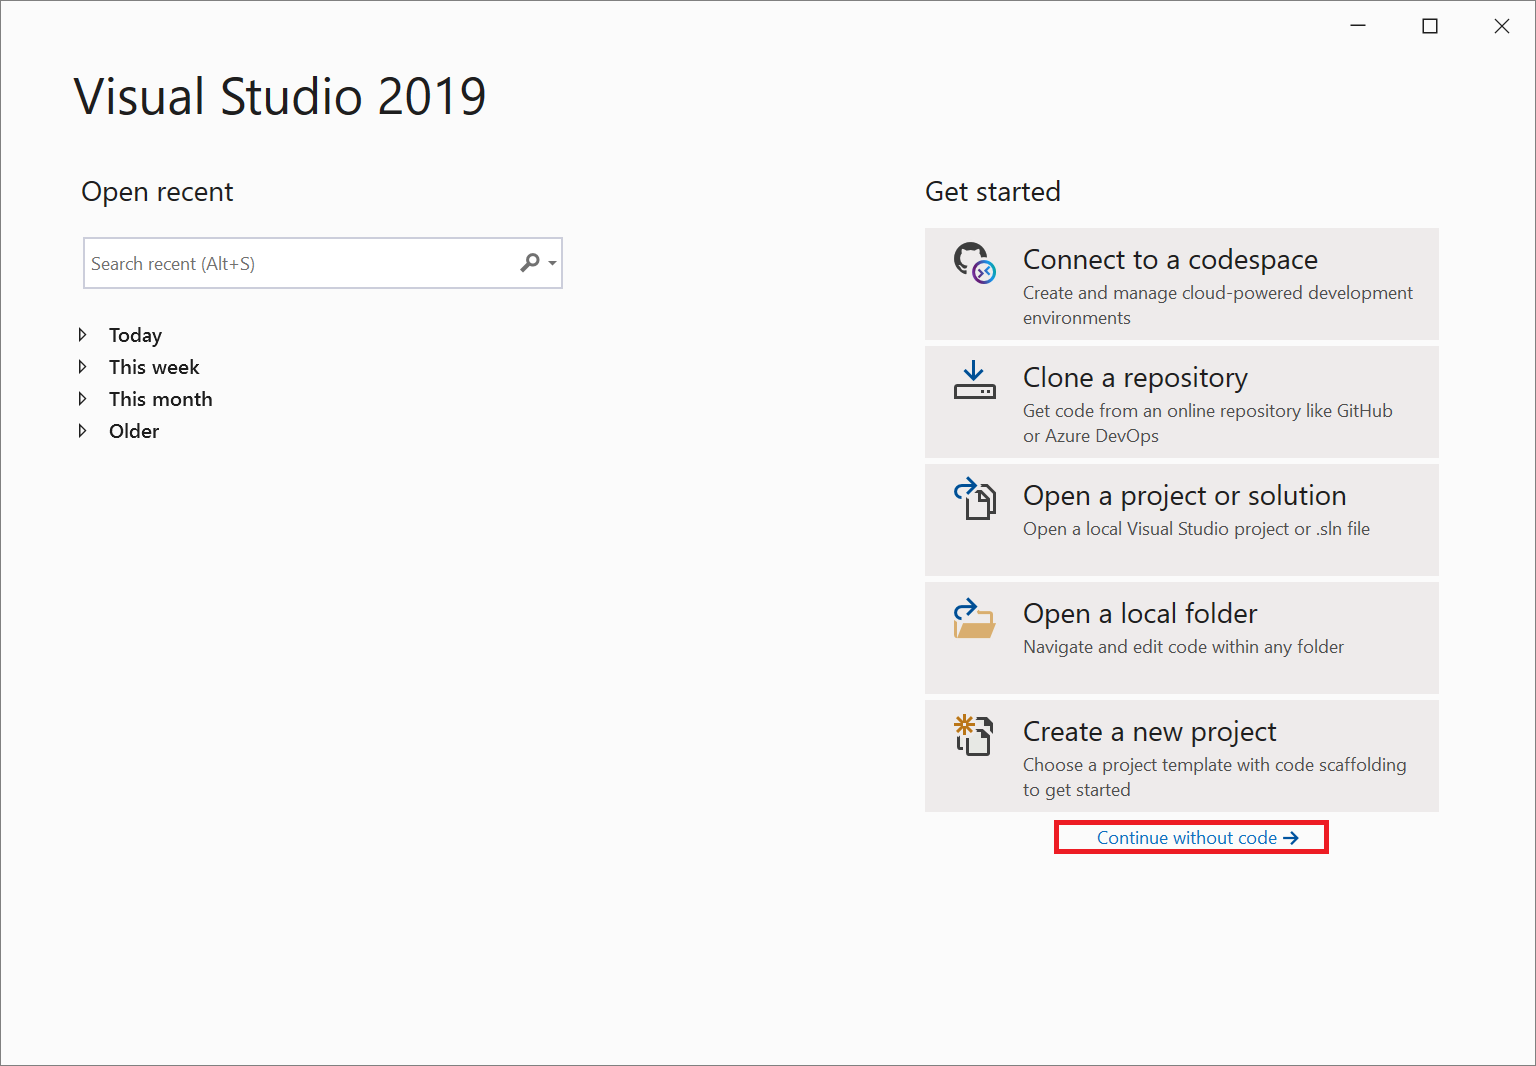 [コードなしで続行] リンクが強調表示されている Visual Studio 2019 のスタート ウィンドウのスクリーンショット。